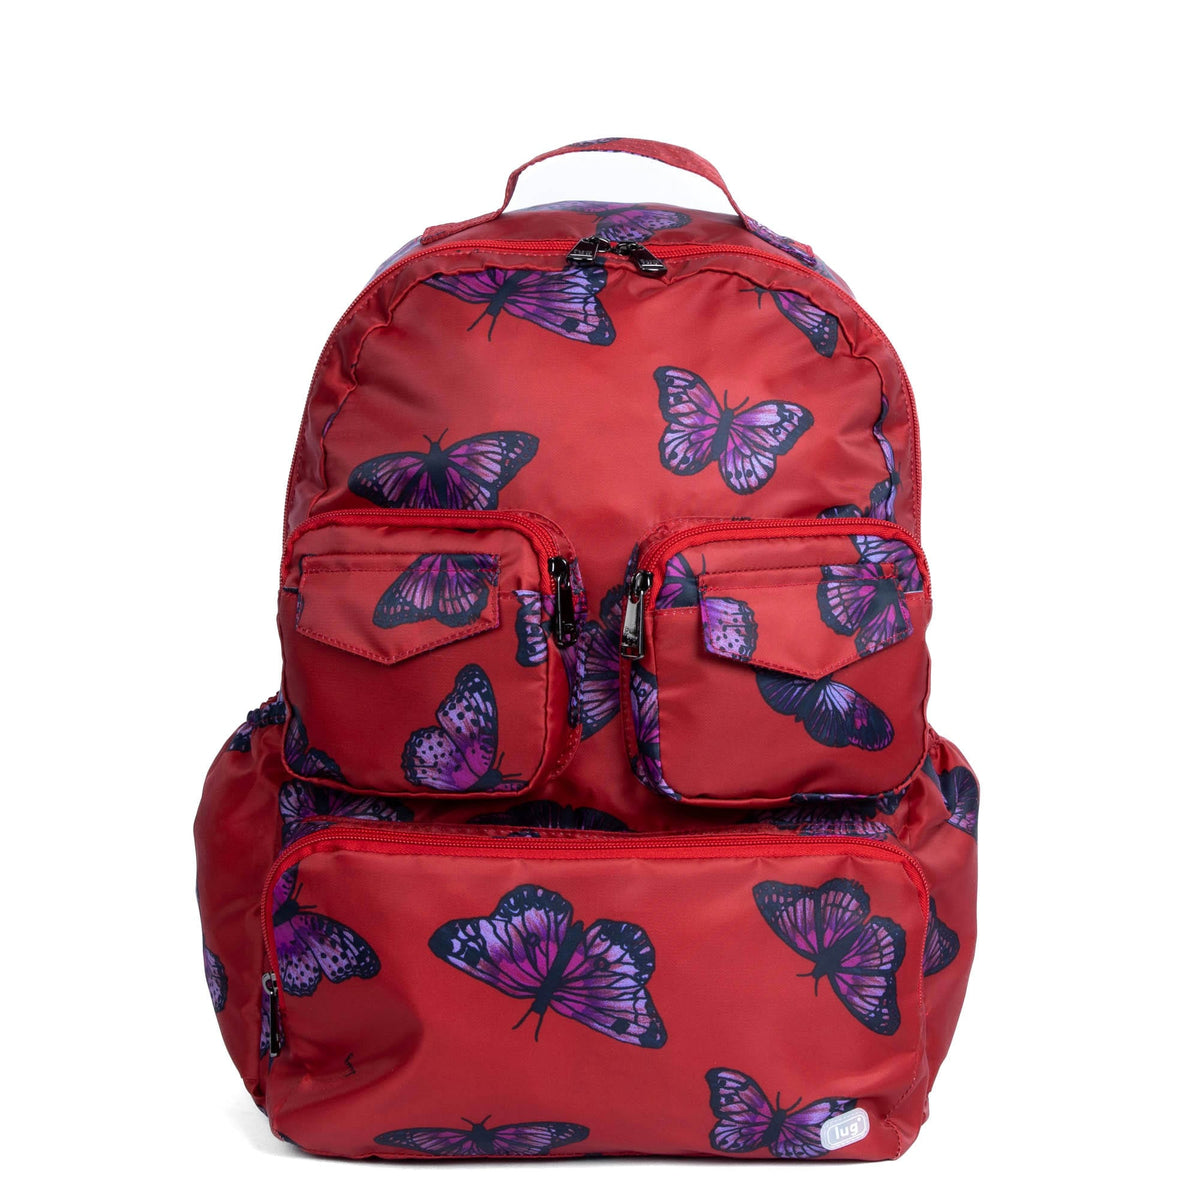 Puddle Jumper SE Packable Backpack